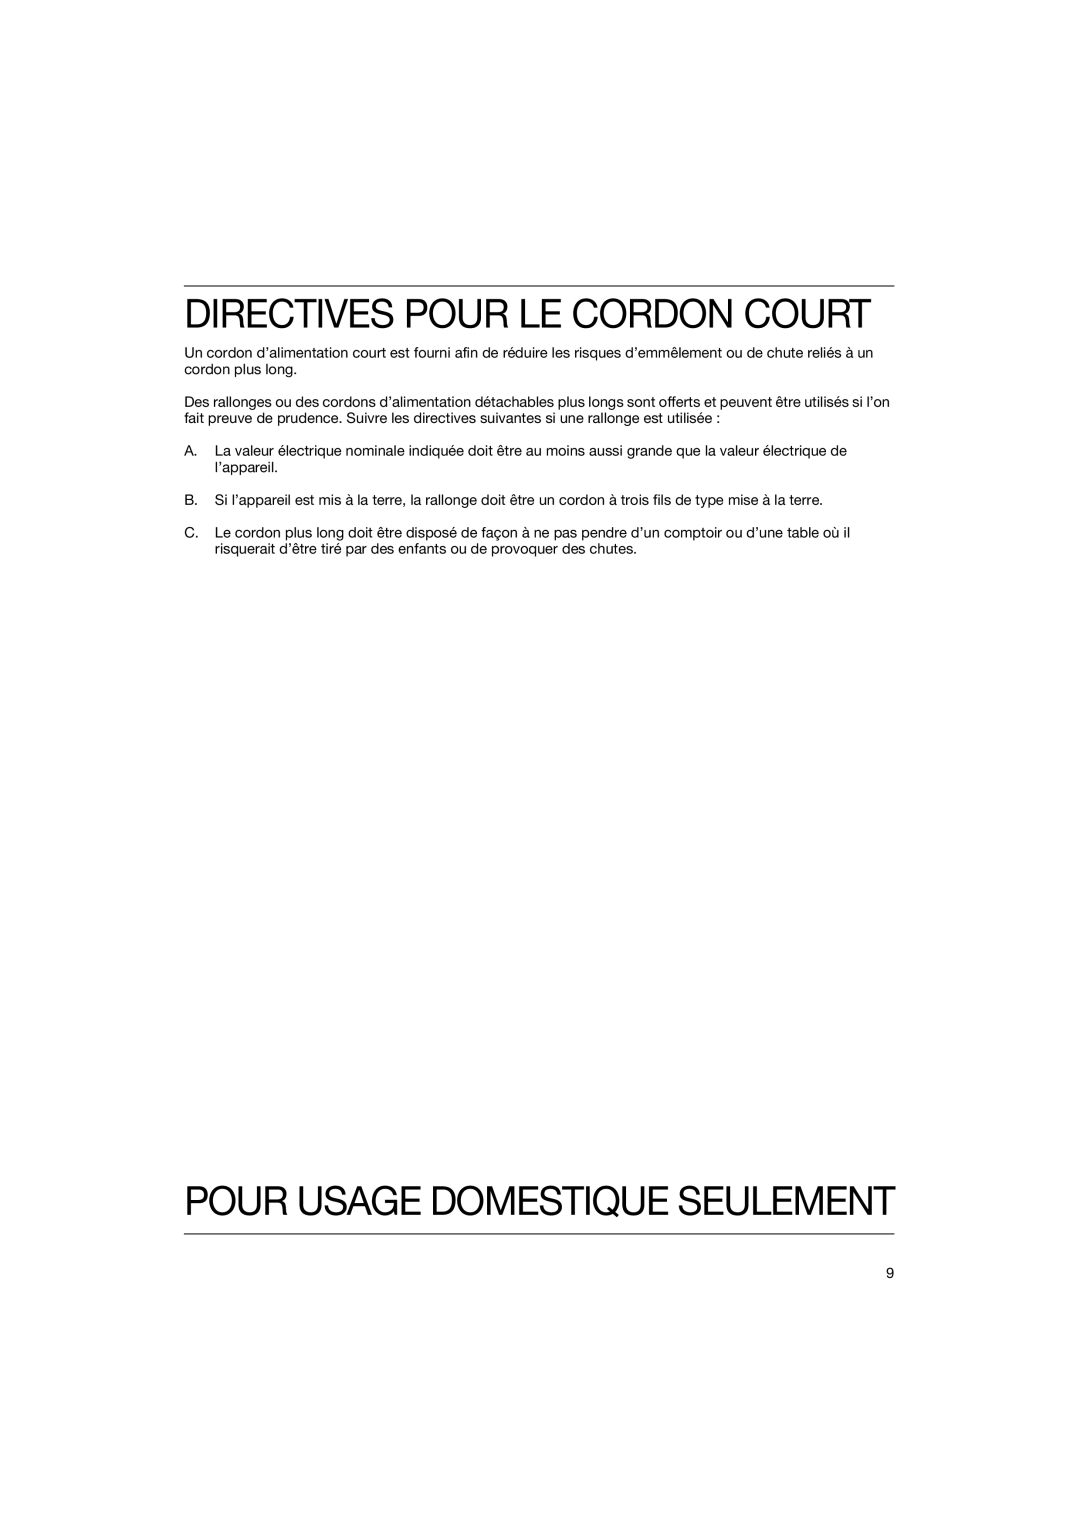 Braun HT 500W, HT 500 B manual Directives Pour Le Cordon Court, Pour Usage Domestique Seulement 